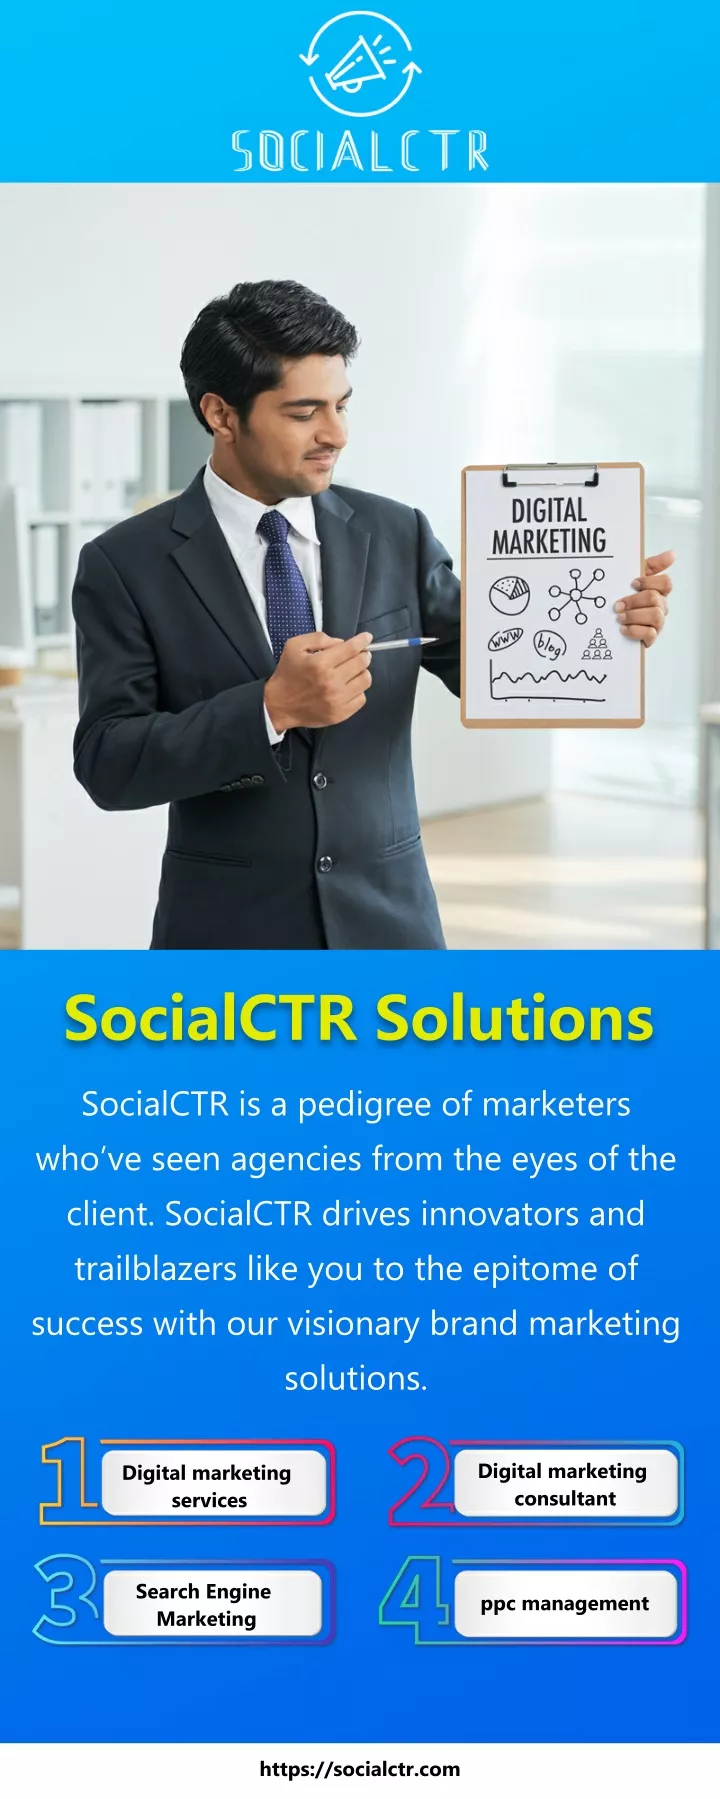 socialctr solutions